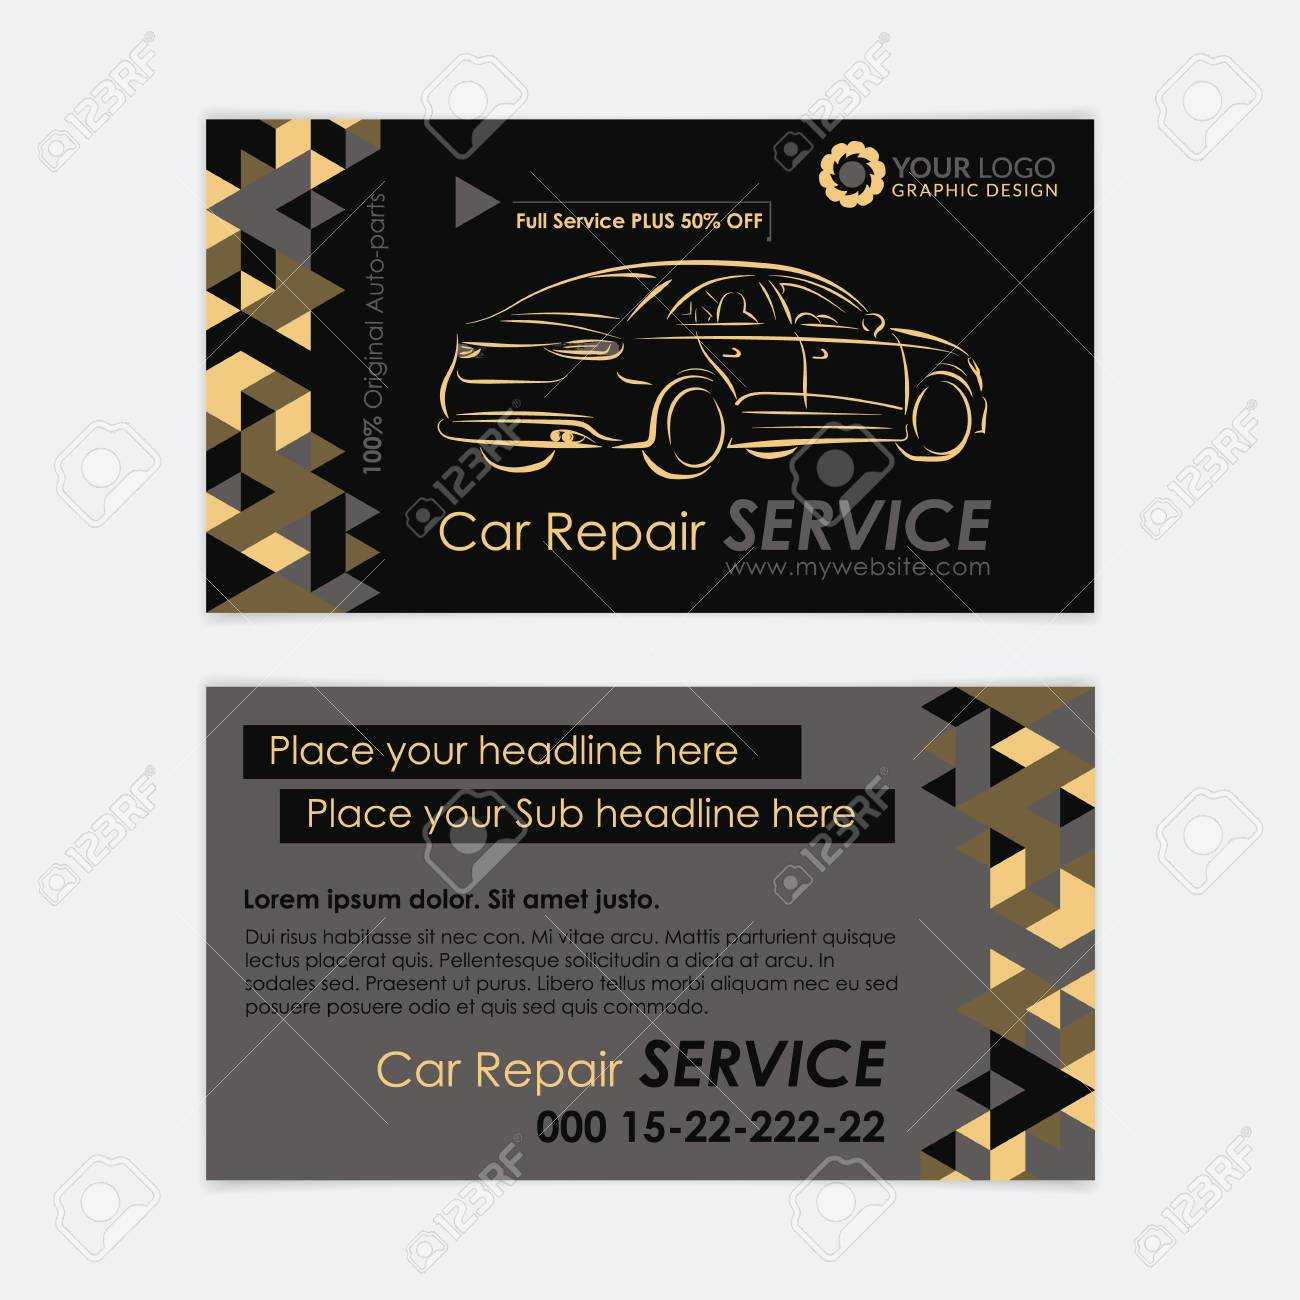 Automotive Service Business Card Template. Car Diagnostics And.. For Automotive Business Card Templates